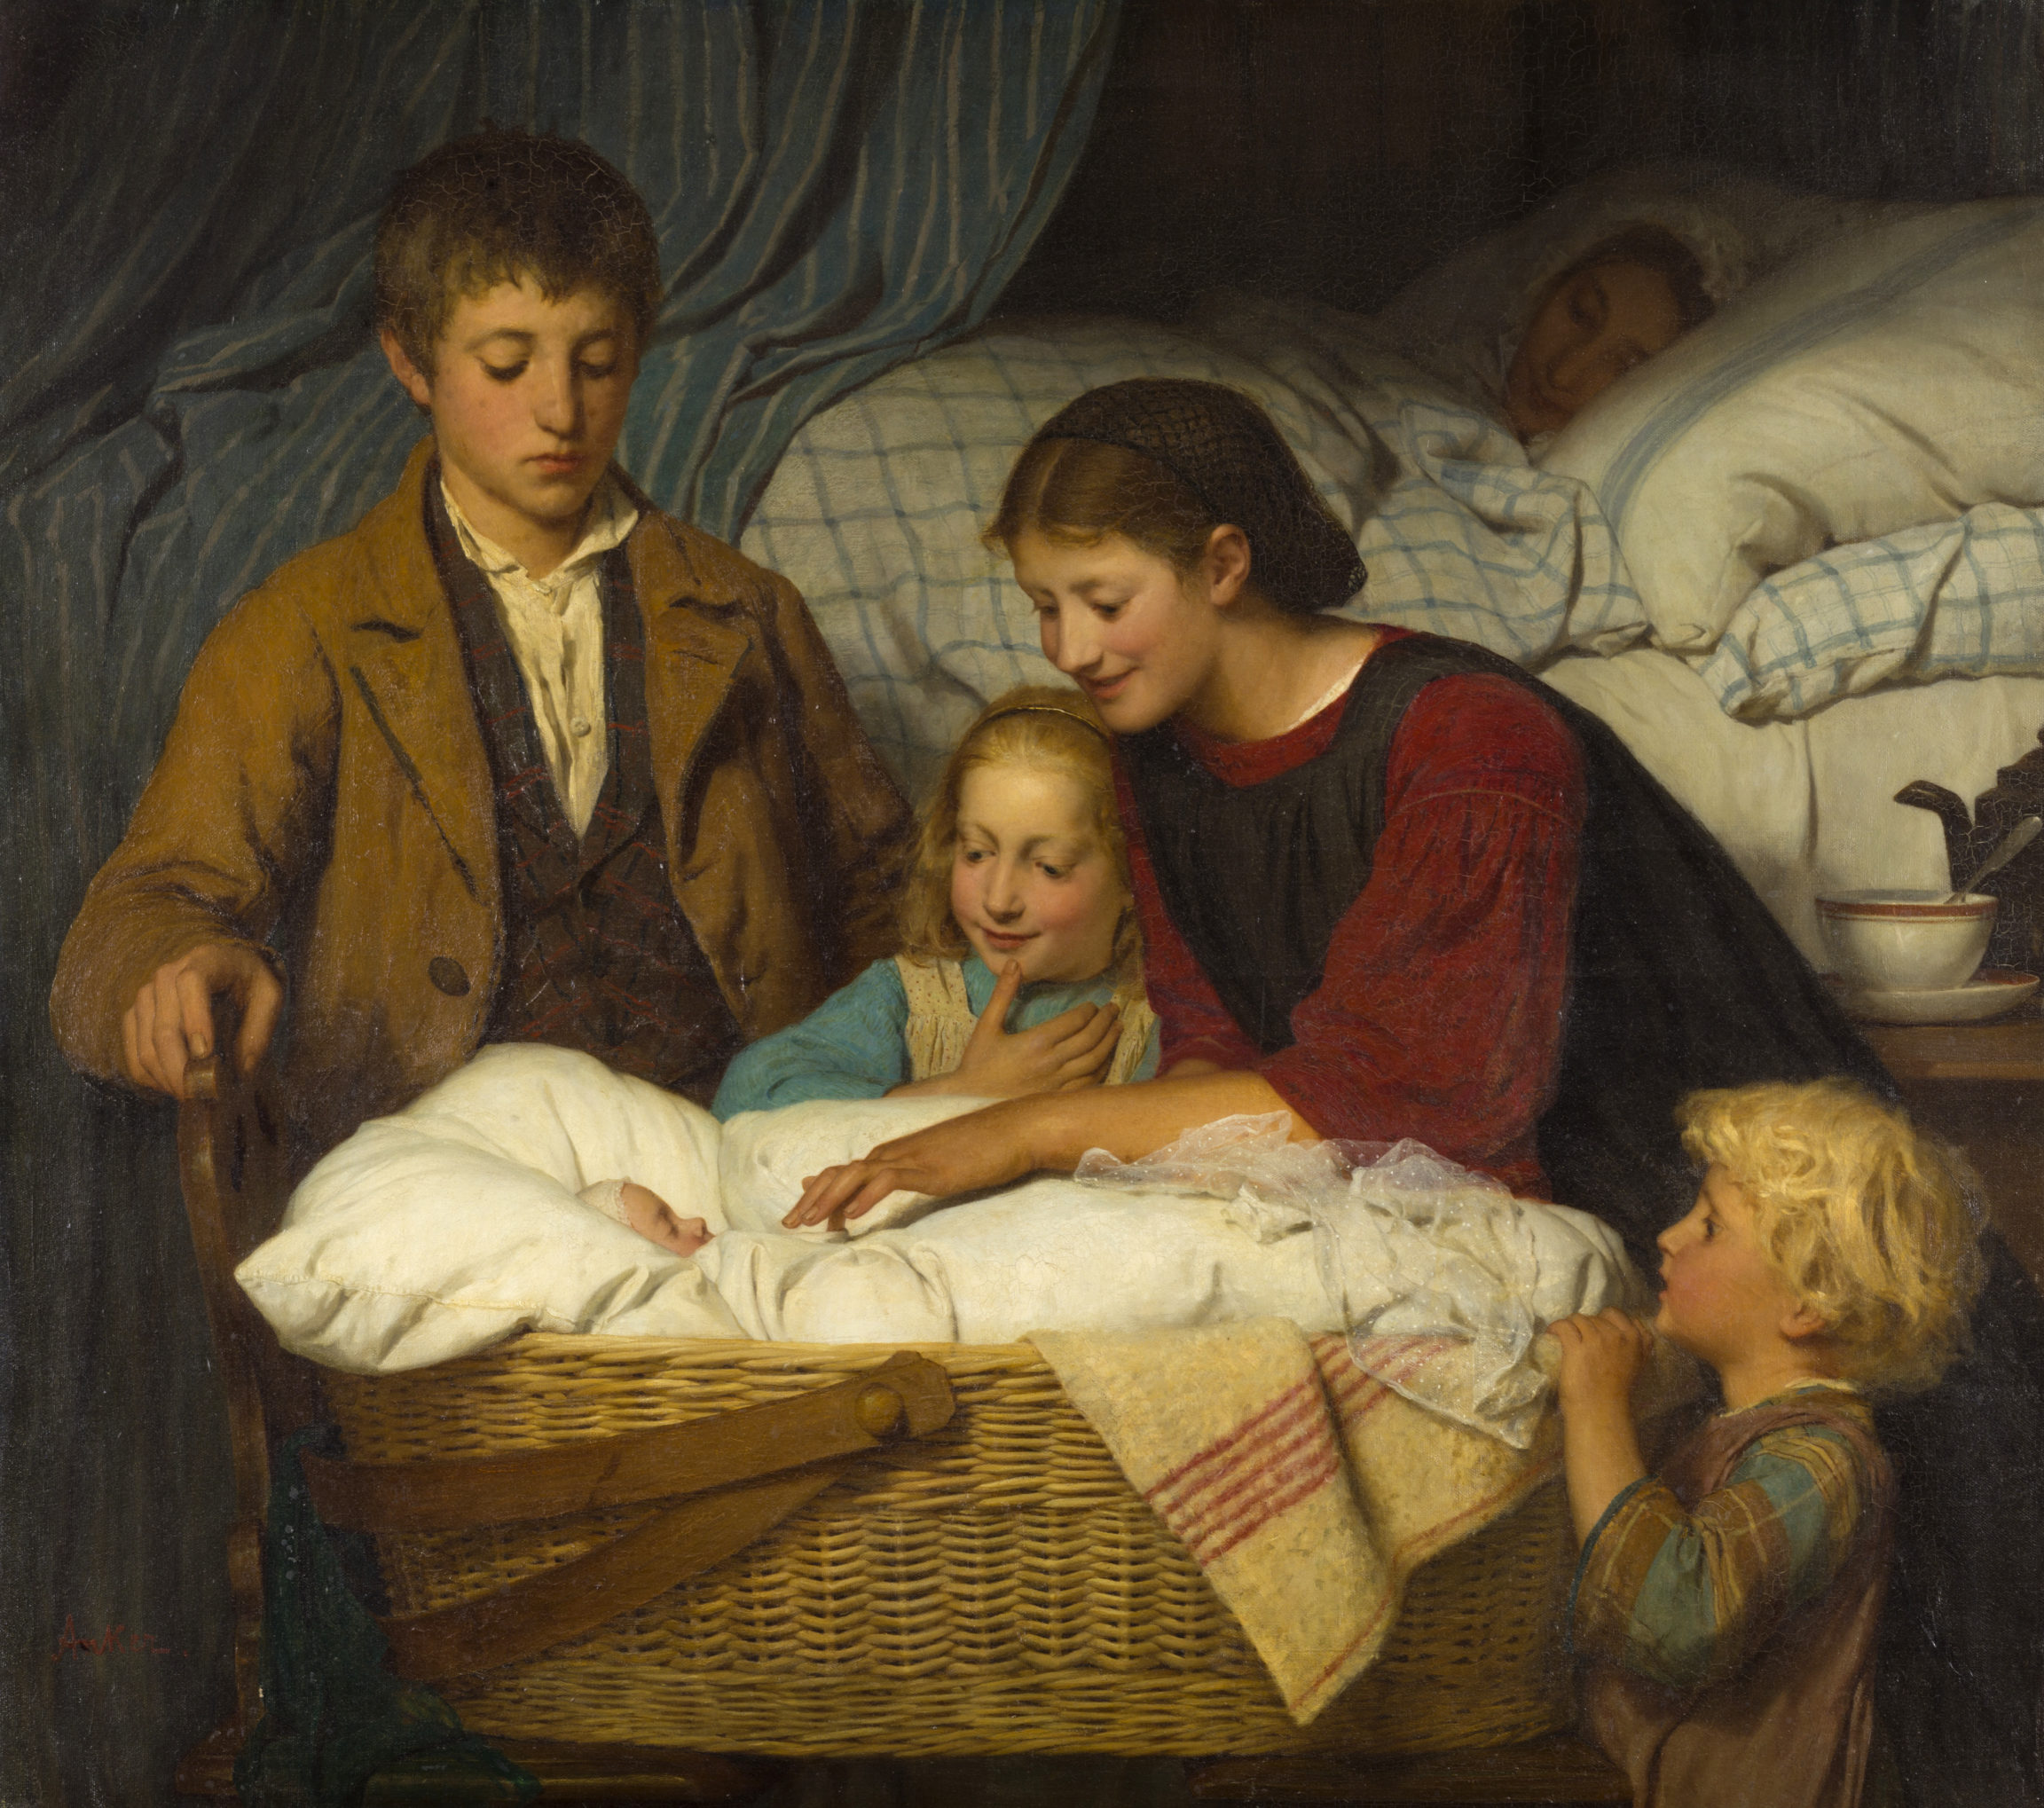 Albert Anker, Le Nouveau-né (The Newborn), 1867